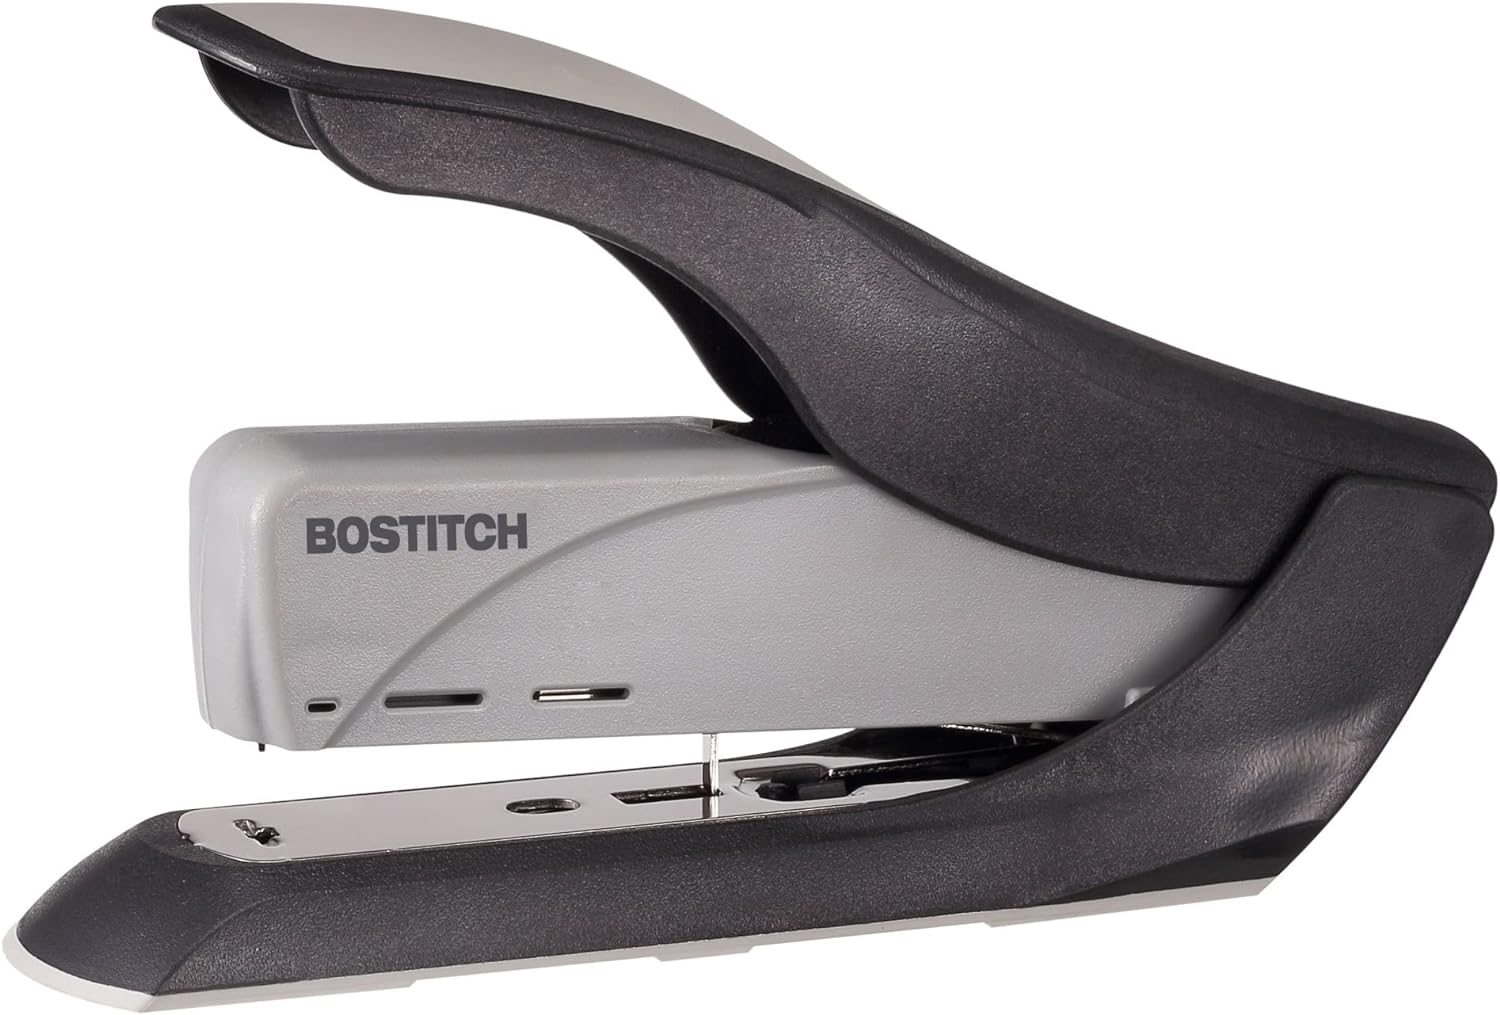 Bostitch 60 Sheet Heavy Duty Stapler - Two Fingers, No Effort, Spring Powered Stapler - Gray (1200)